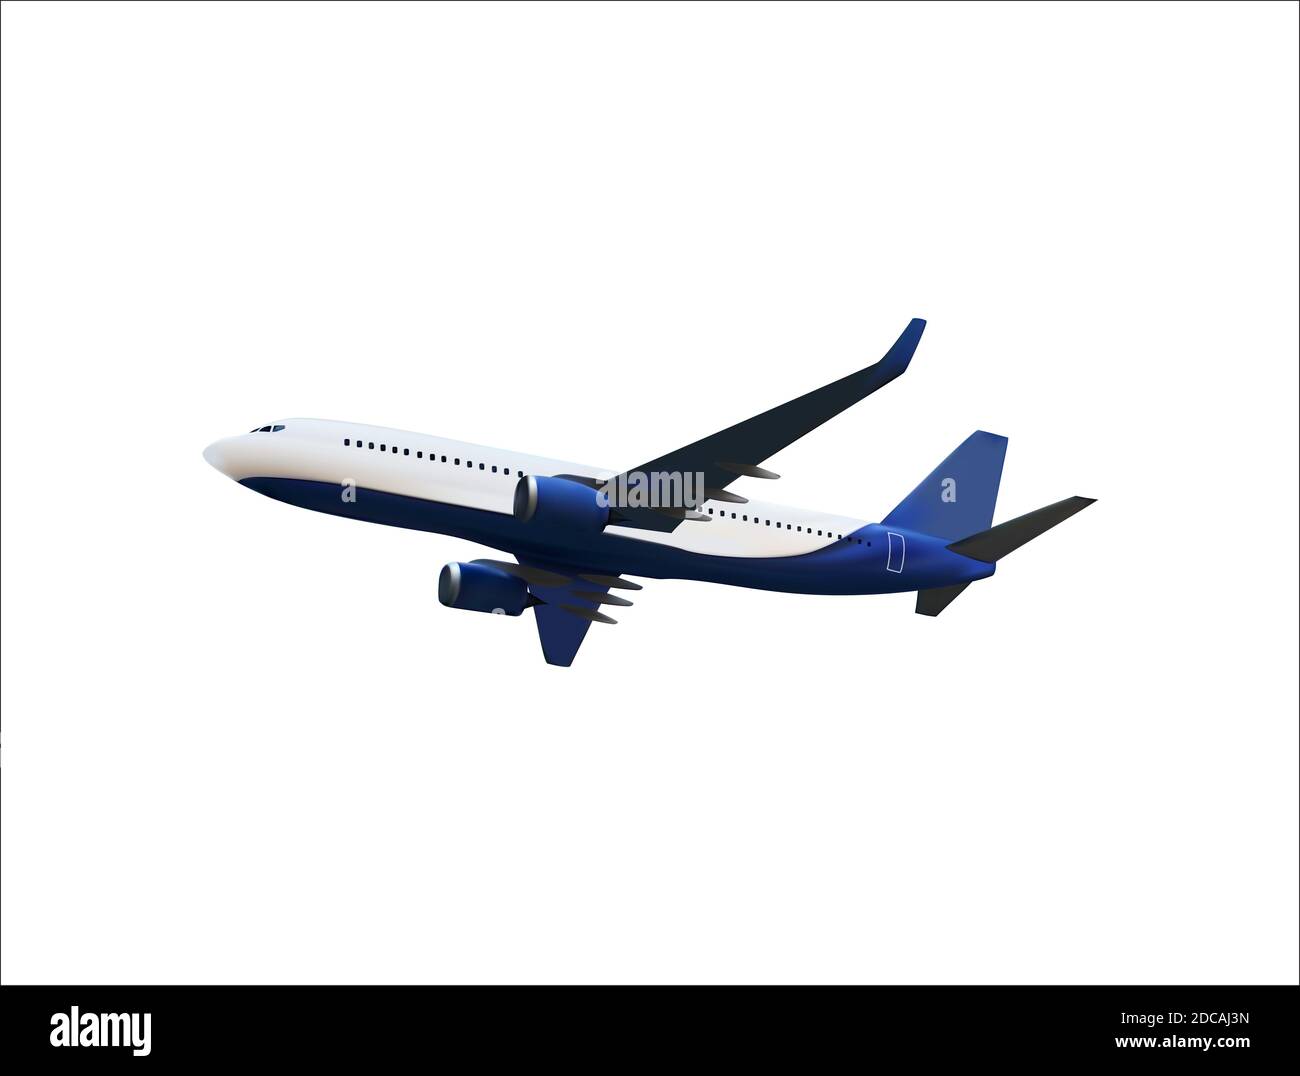 Modèle 3D réaliste d'un avion volant dans l'air de couleur blanche et bleue. Illustration. Banque D'Images